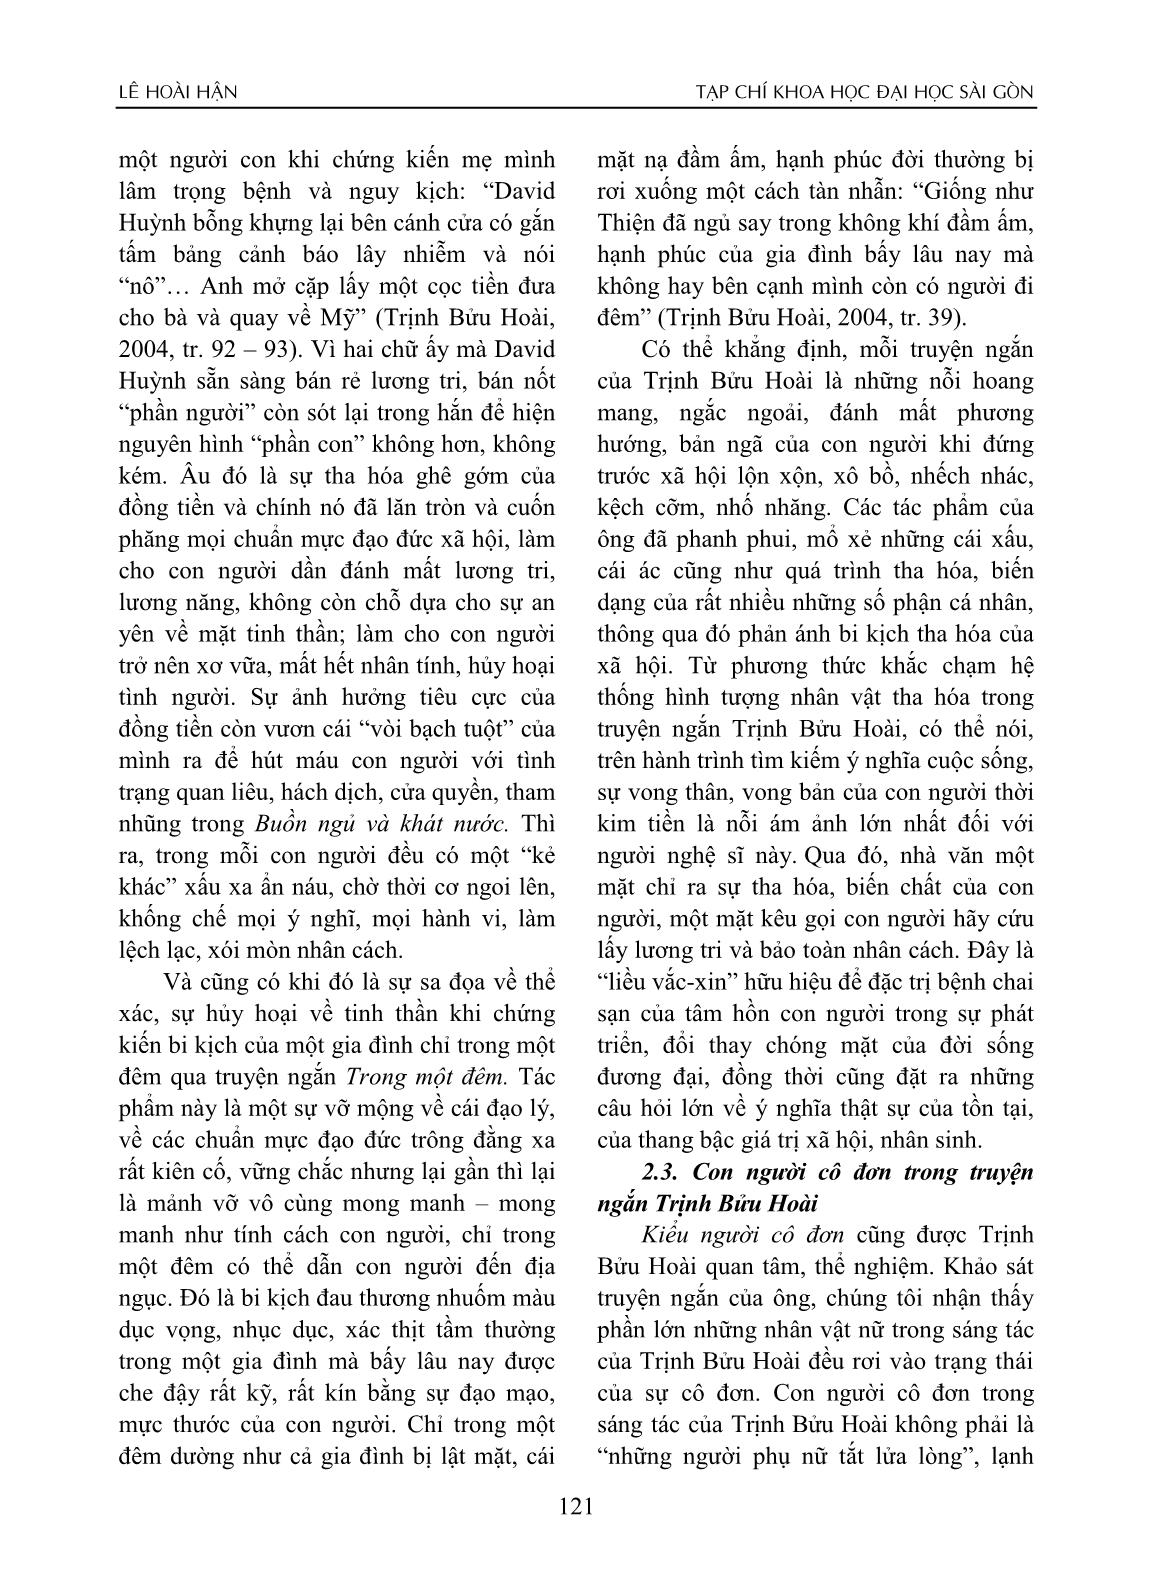 Con người Nam Bộ trong truyện ngắn Trịnh Bửu Hoài trang 4